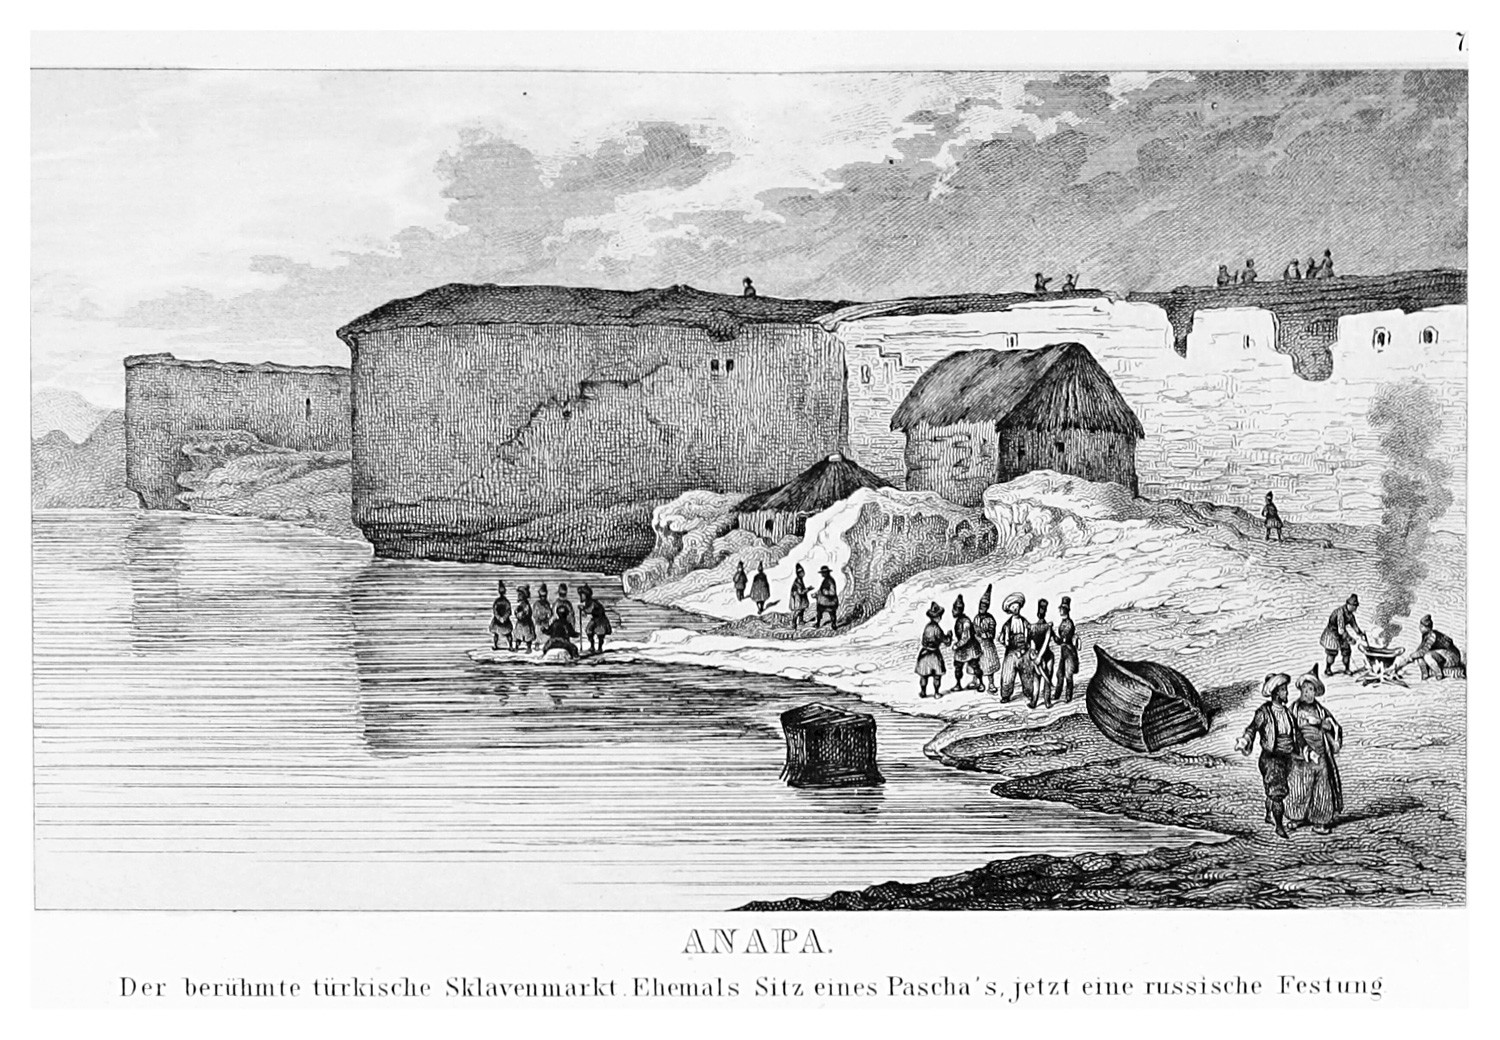 La forteresse turque d’Anapa était un important marché d’esclave